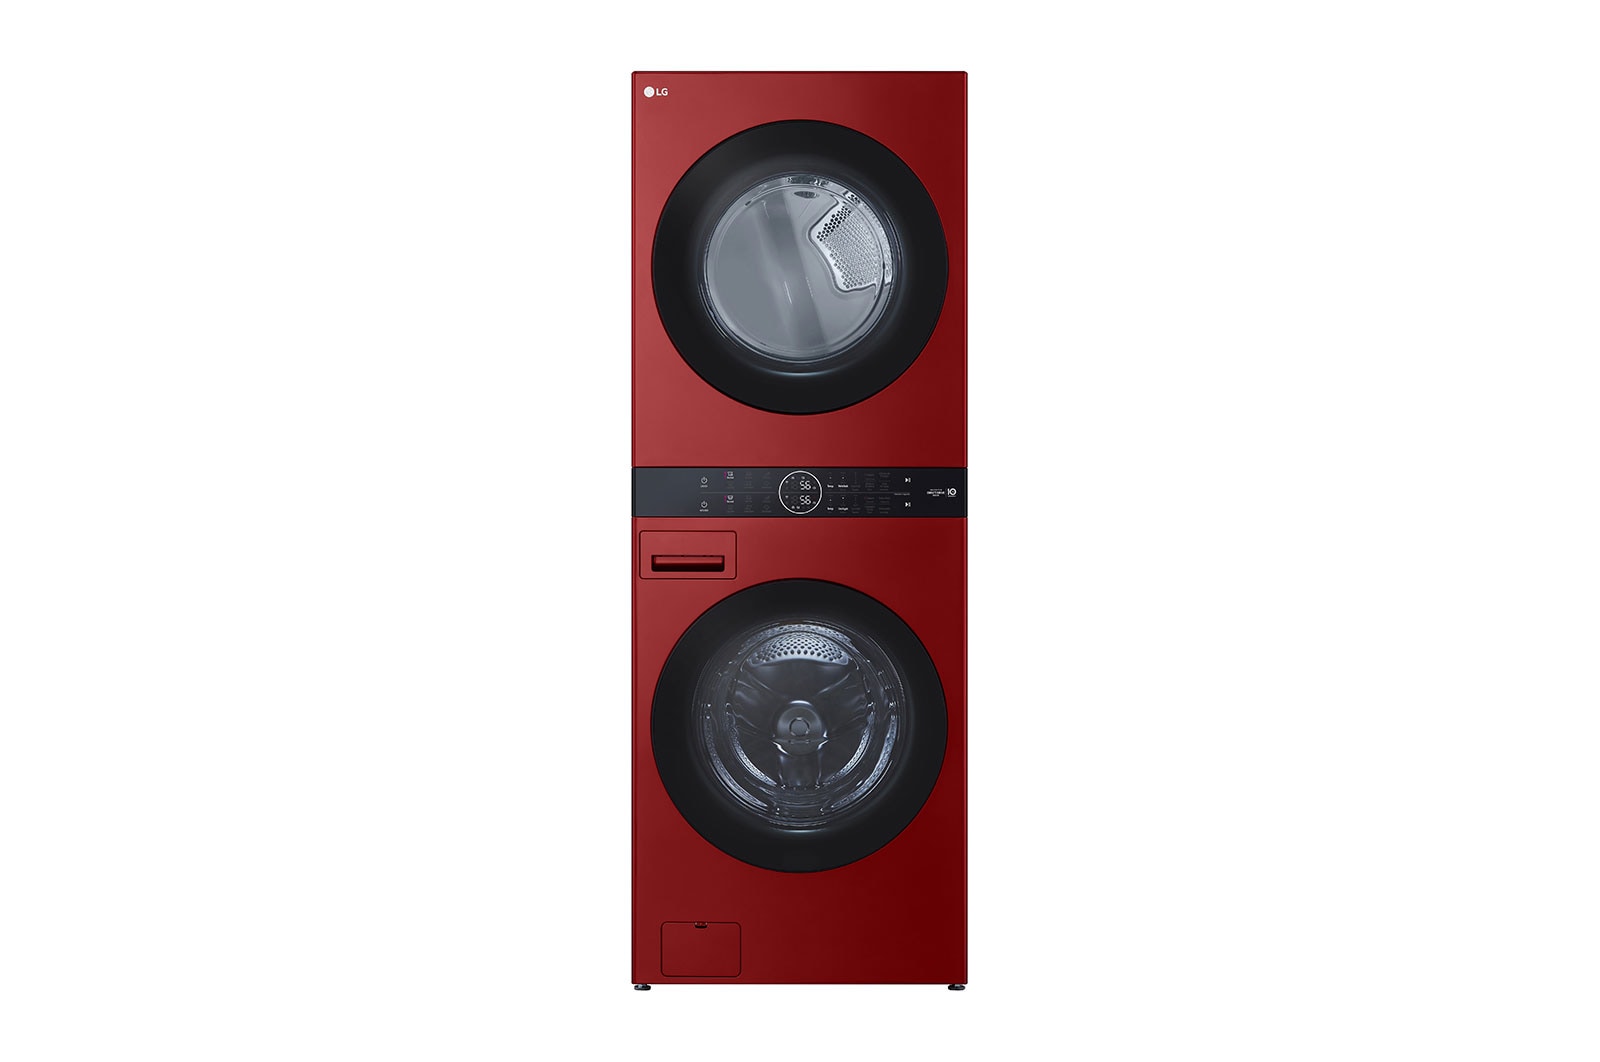 LG Torre de lavado WashTower™ LG Carga Frontal Inteligente Lavadora y Secadora  Inverter AI DD™ (Inteligencia Artificial)  con Conectividad LG ThinQ 22 Kg / 22Kg - Roja - WK22RS6, WK22RS6